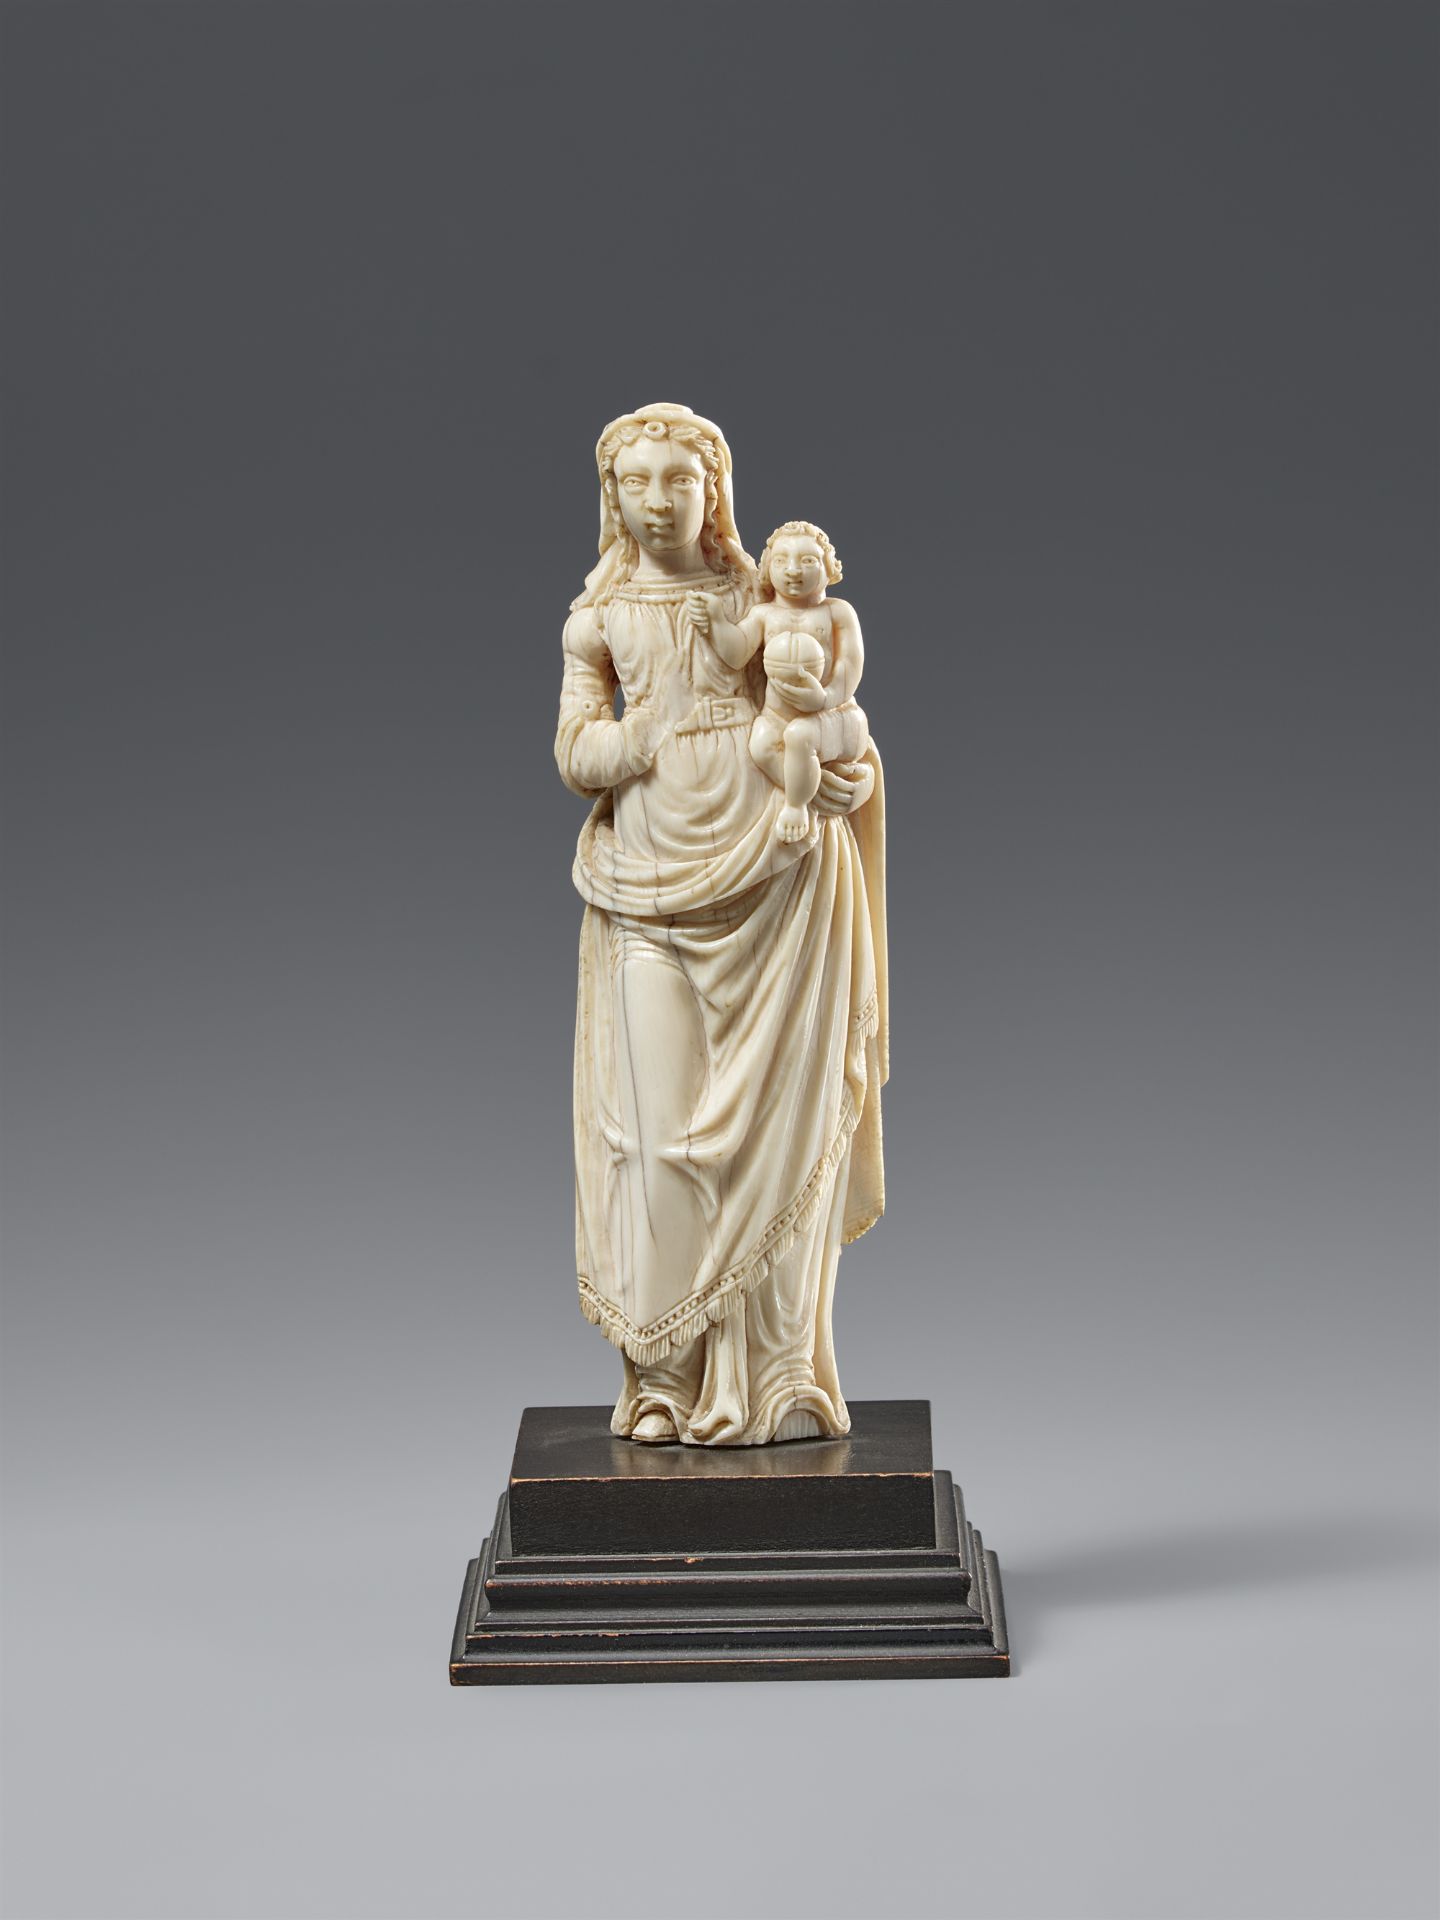 Indo-portugiesische Figur der Maria mit Jesuskind. Elfenbein. Indien, Goa. 18. Jh.